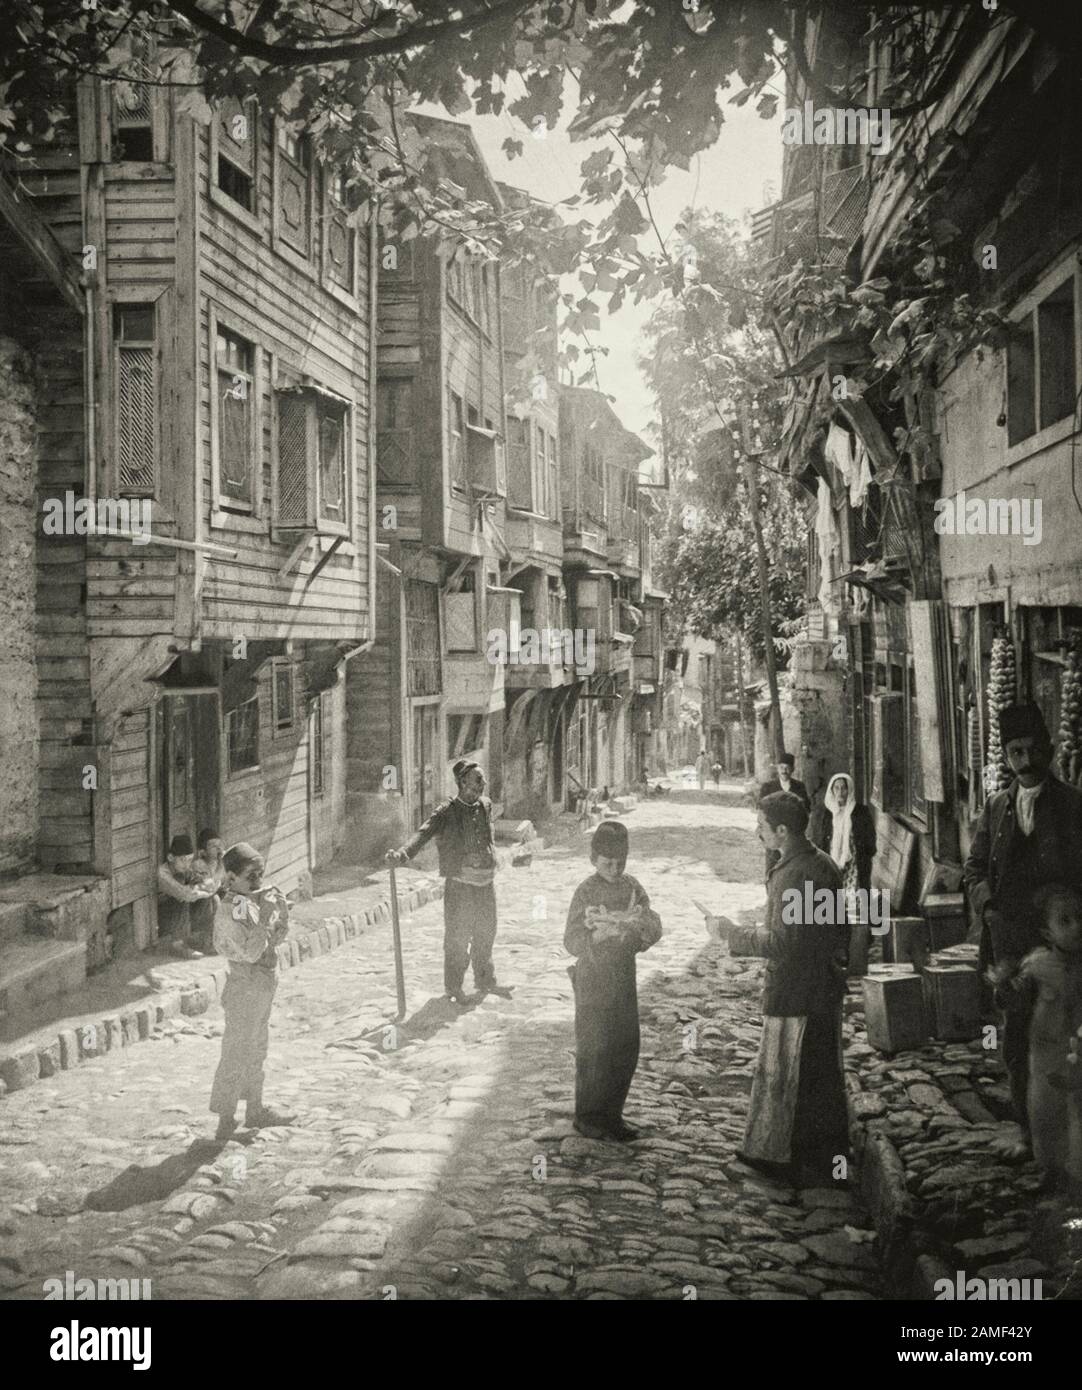 Eine Szene in einem Obst- und Gemüseladen in einer der alten Straßen von Istanbul in der Nähe der Hagia Sophia (Ayasofya), 1912. Stockfoto